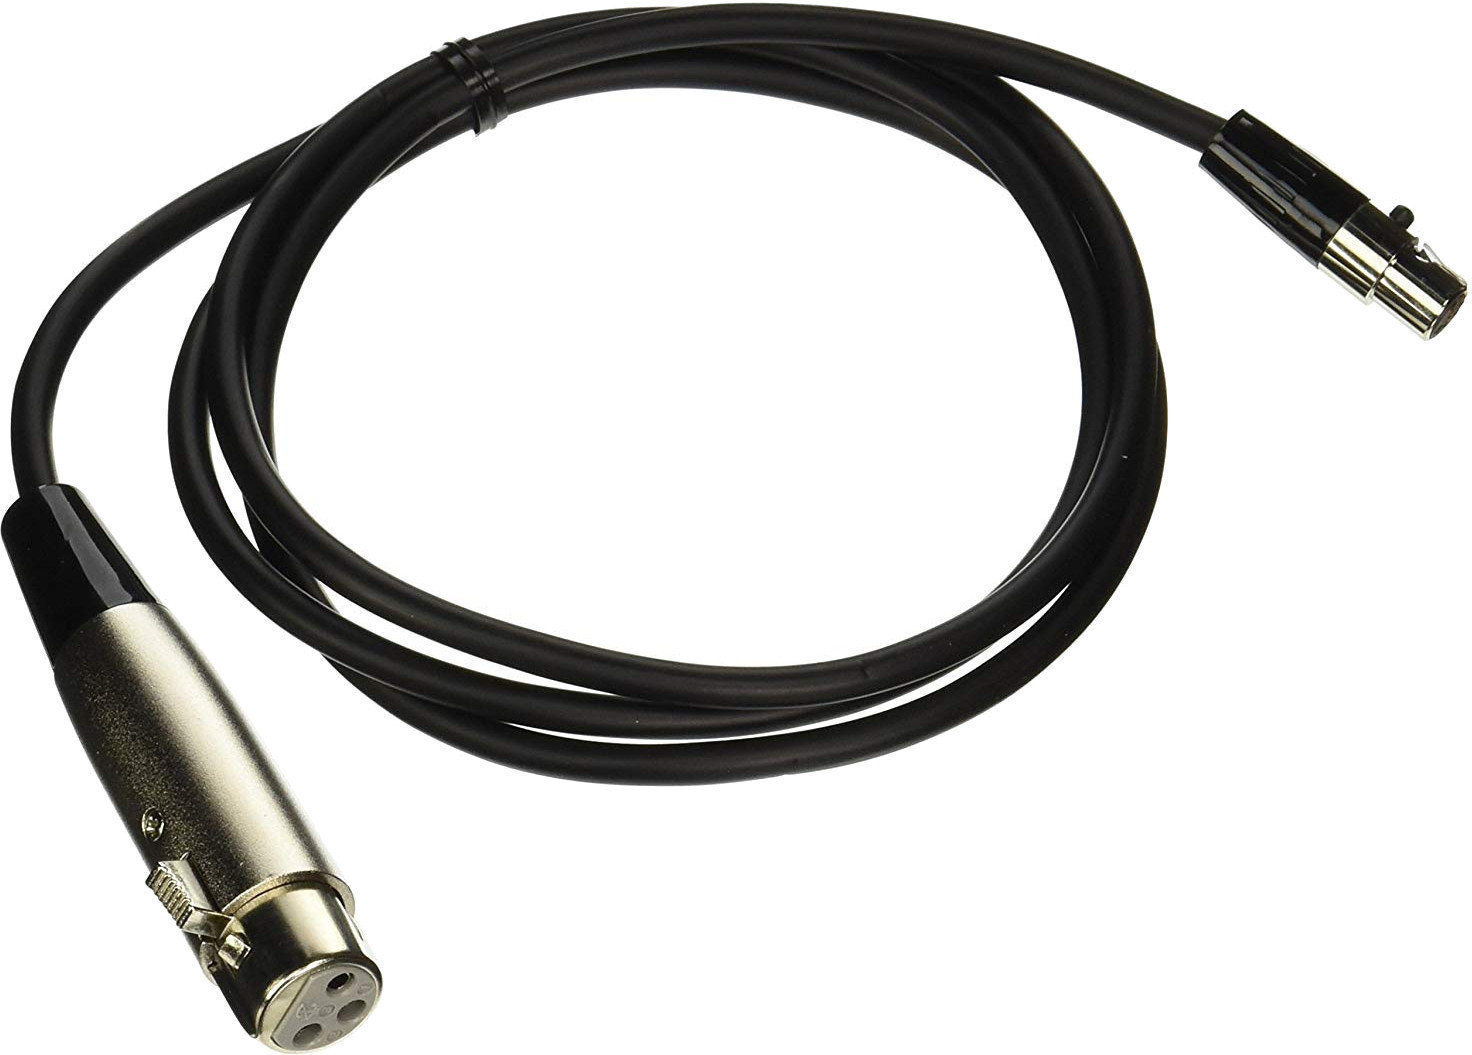 Kabel für drahtlose Systeme Shure WA-310